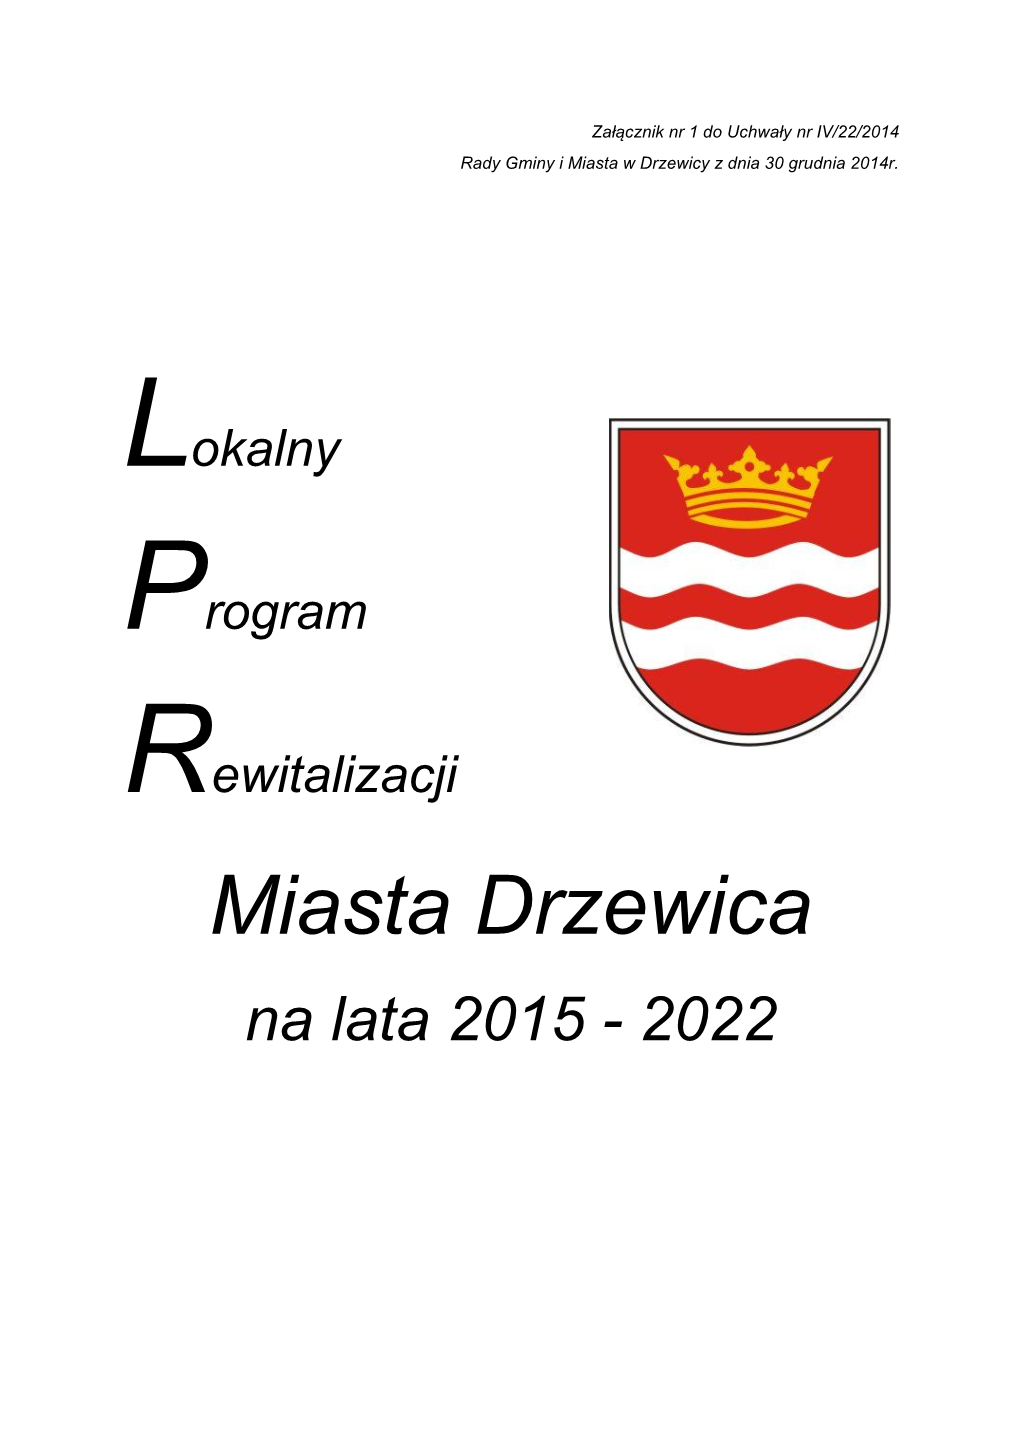 Miasta Drzewica Na Lata 2015 - 2022